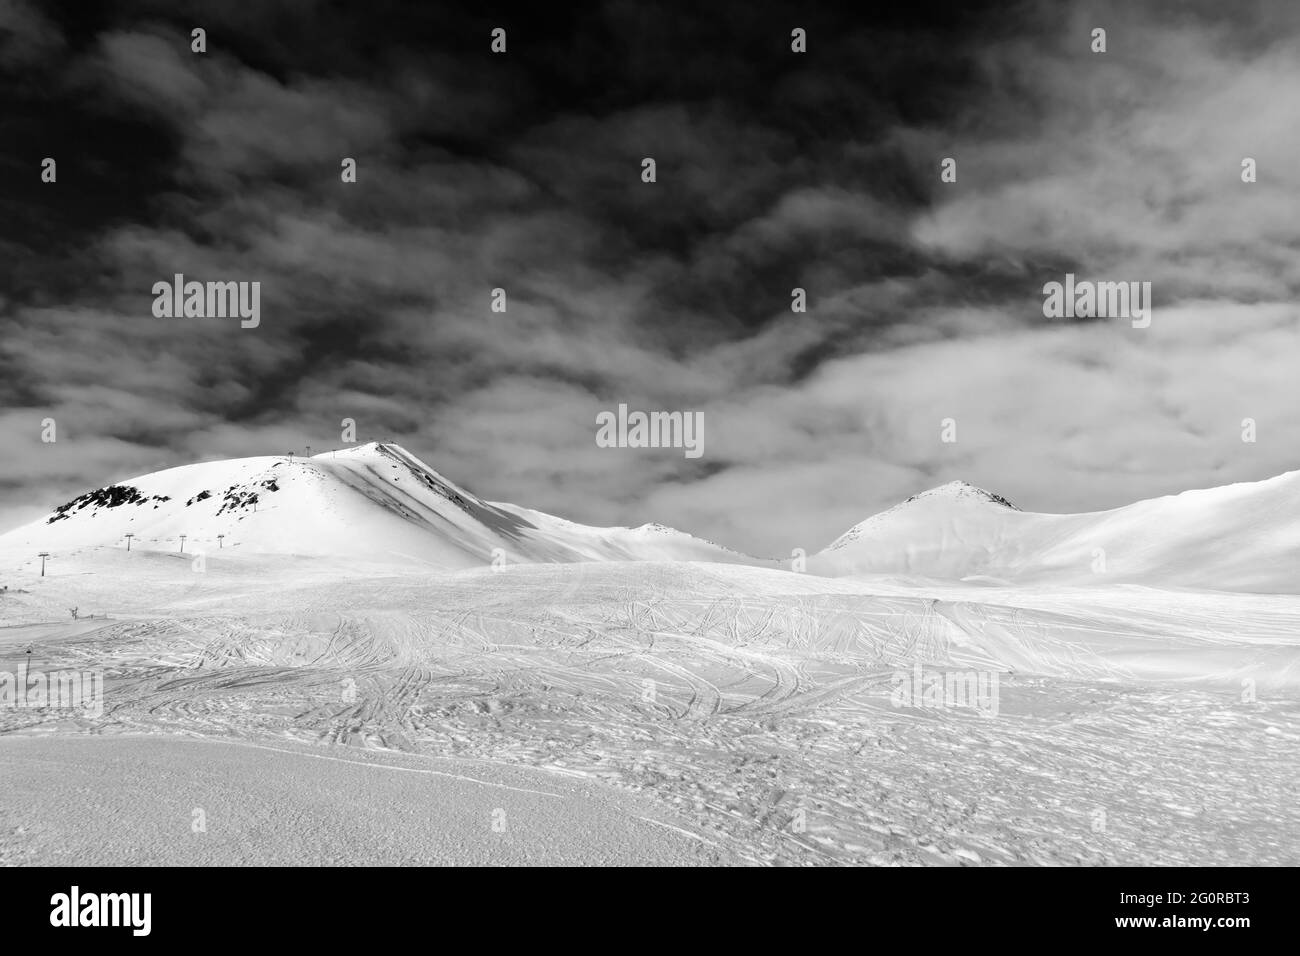 Pista de esquí con estampado de esquís, snowboards y pies, montañas nevadas y cielo con nubes. Montañas del Cáucaso, Georgia, región Gudauri. Gran angular Foto de stock